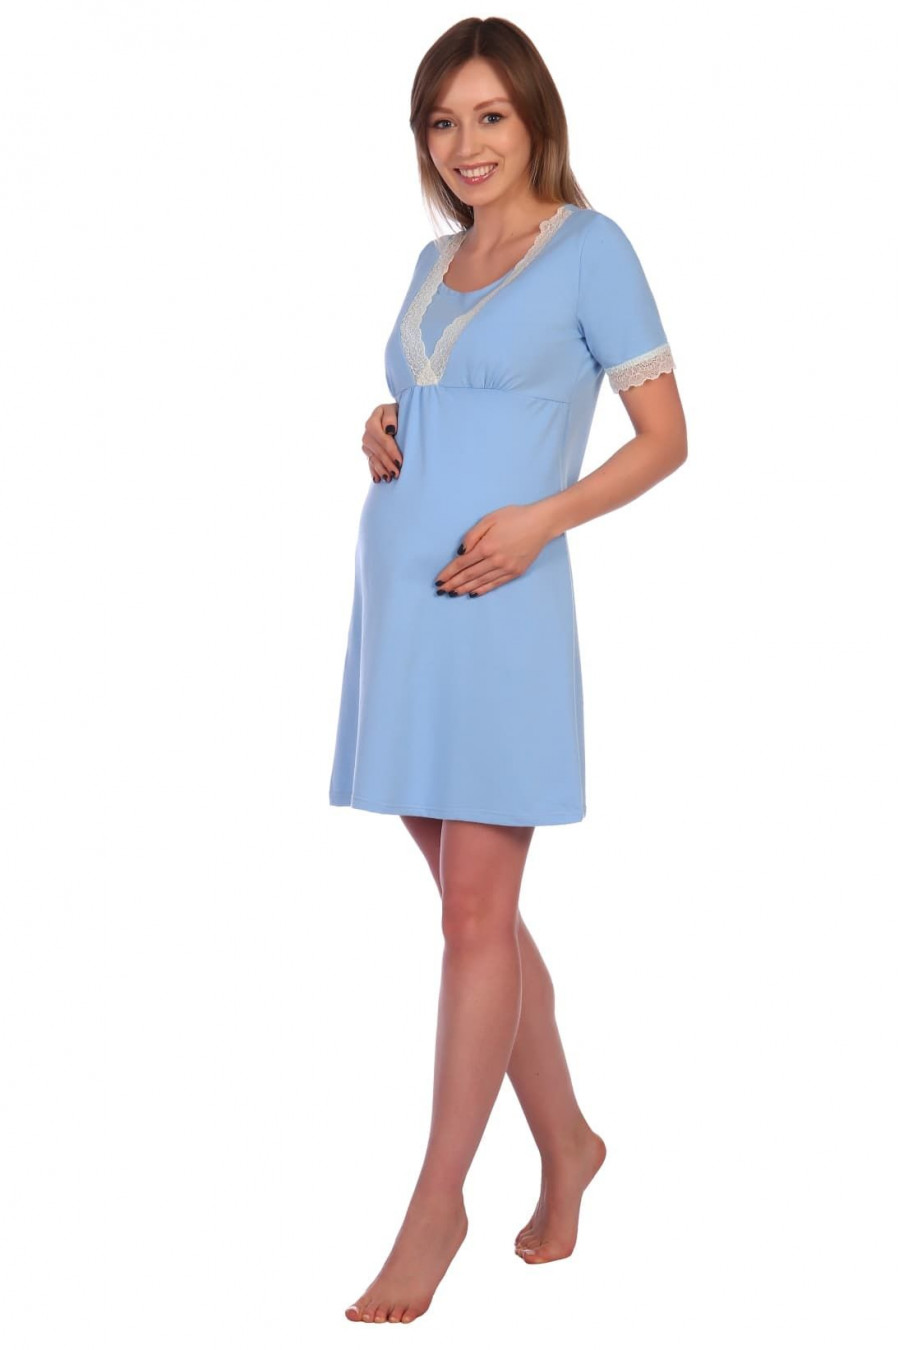 Сорочка для беременных и кормящих кулирка с лайкрой 8.65 голубой